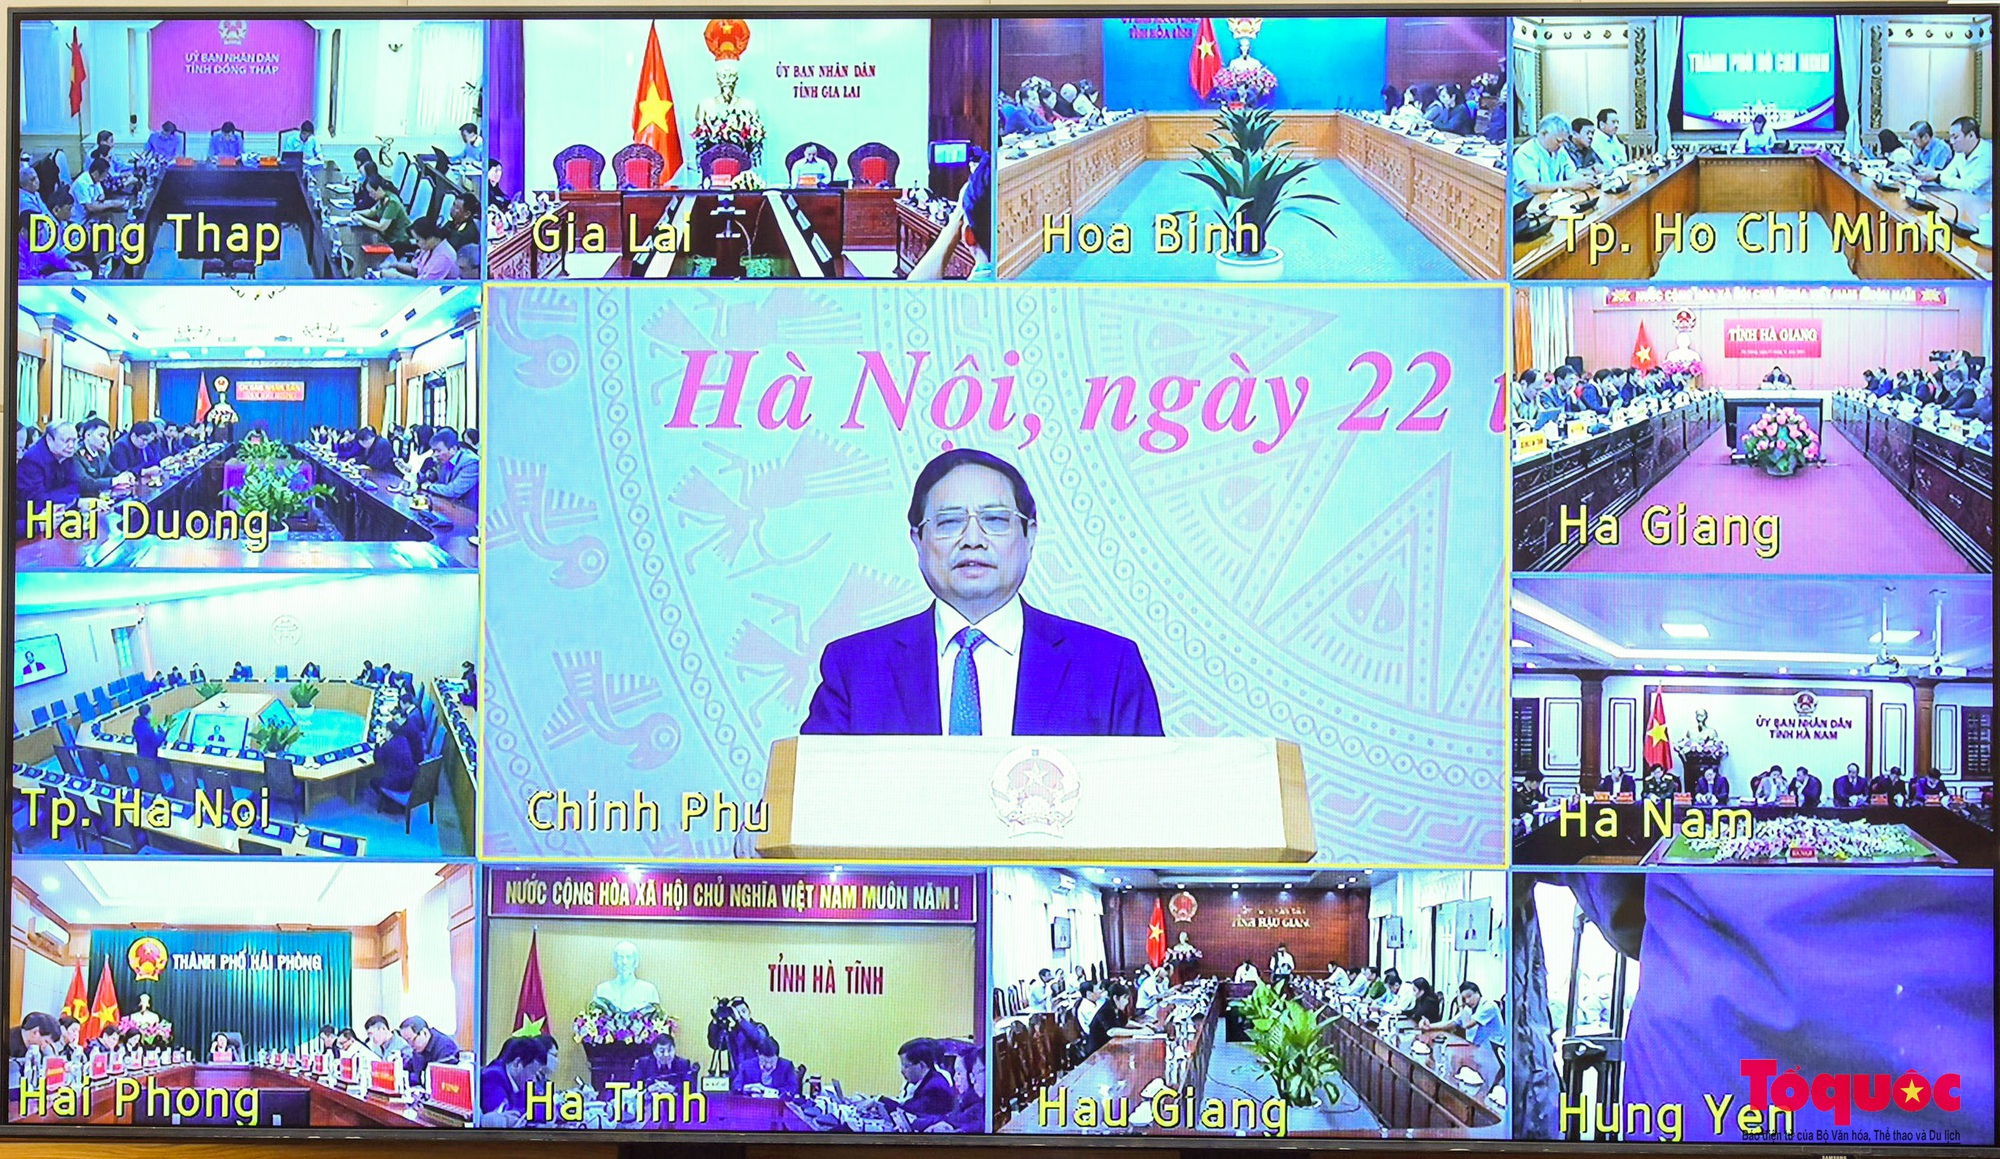 Chùm ảnh: Hội nghị toàn quốc về phát triển các ngành công nghiệp văn hóa Việt Nam - Ảnh 7.